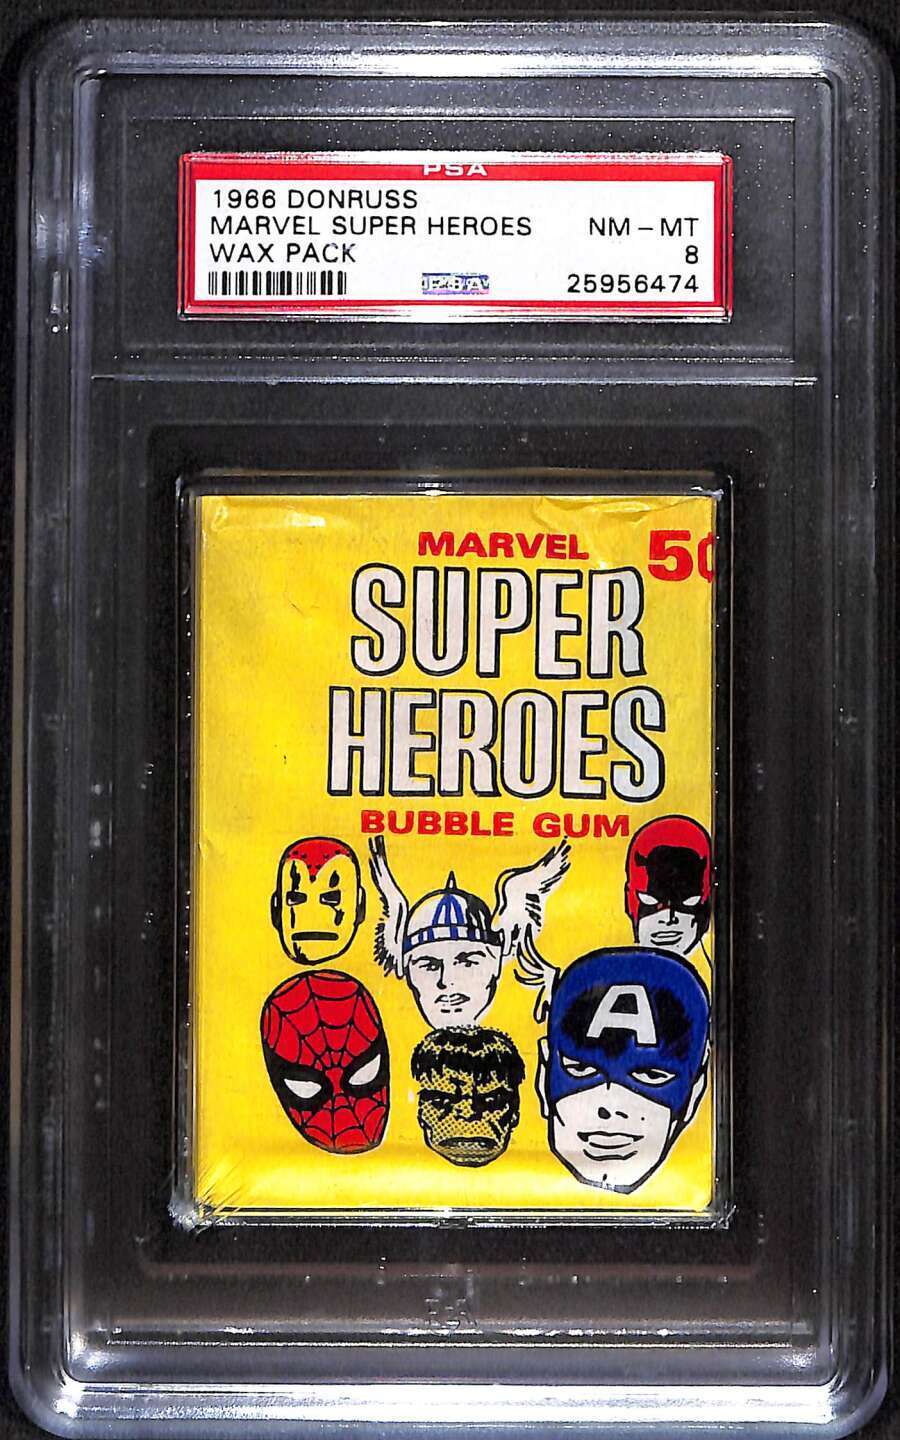 1966 Donruss Marvel Super Heroes  PSA 8 NMMT sealed wax pack old slab B89740